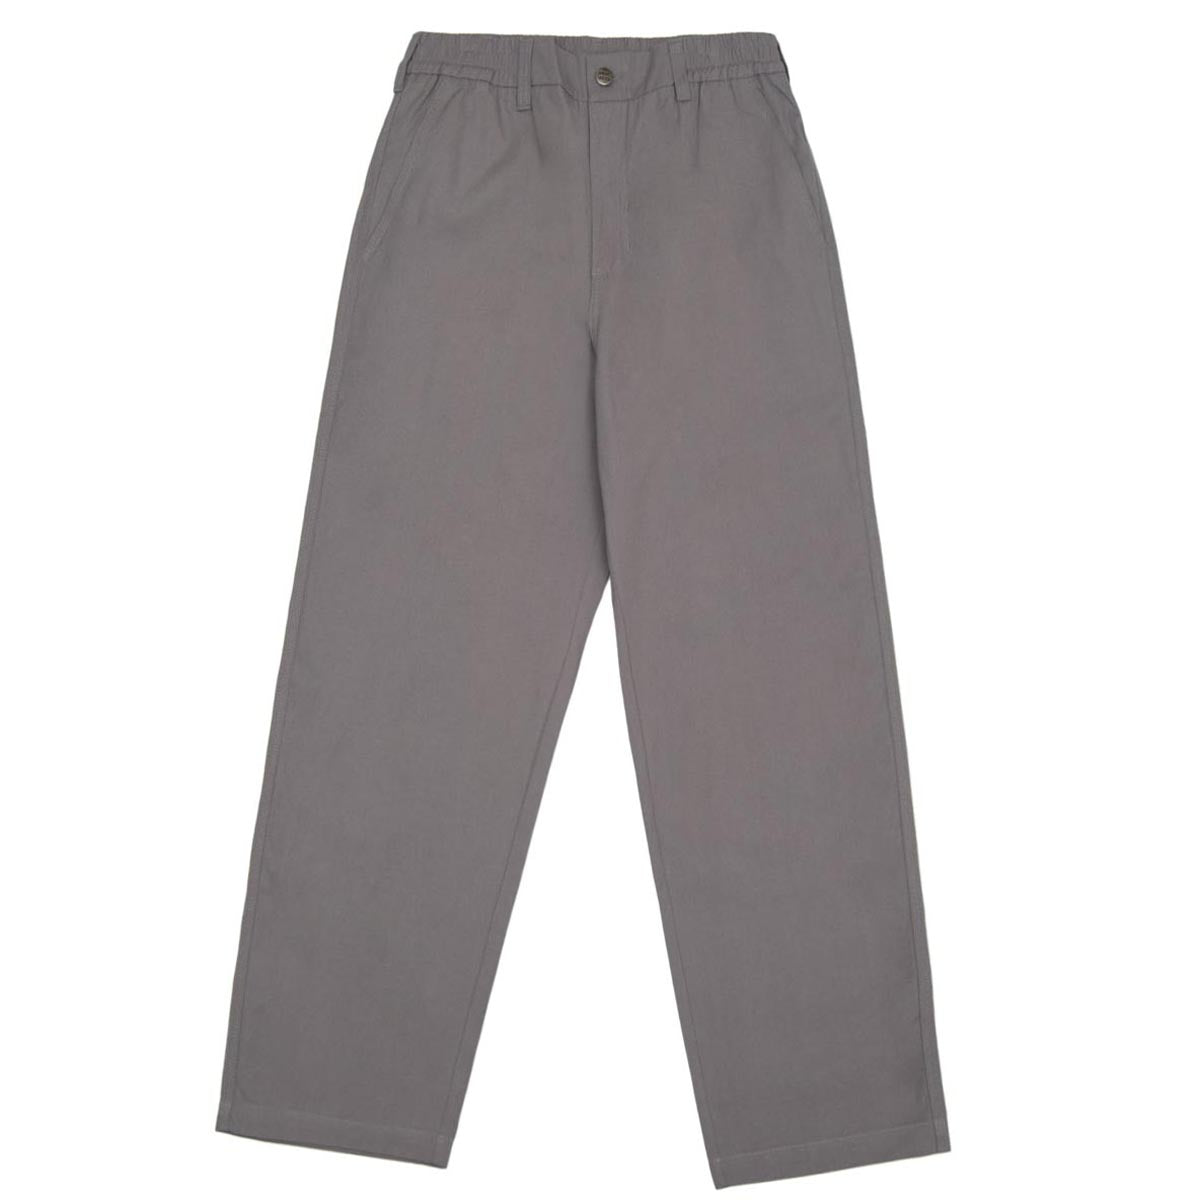 WKND Loosies Pants - Grey image 1